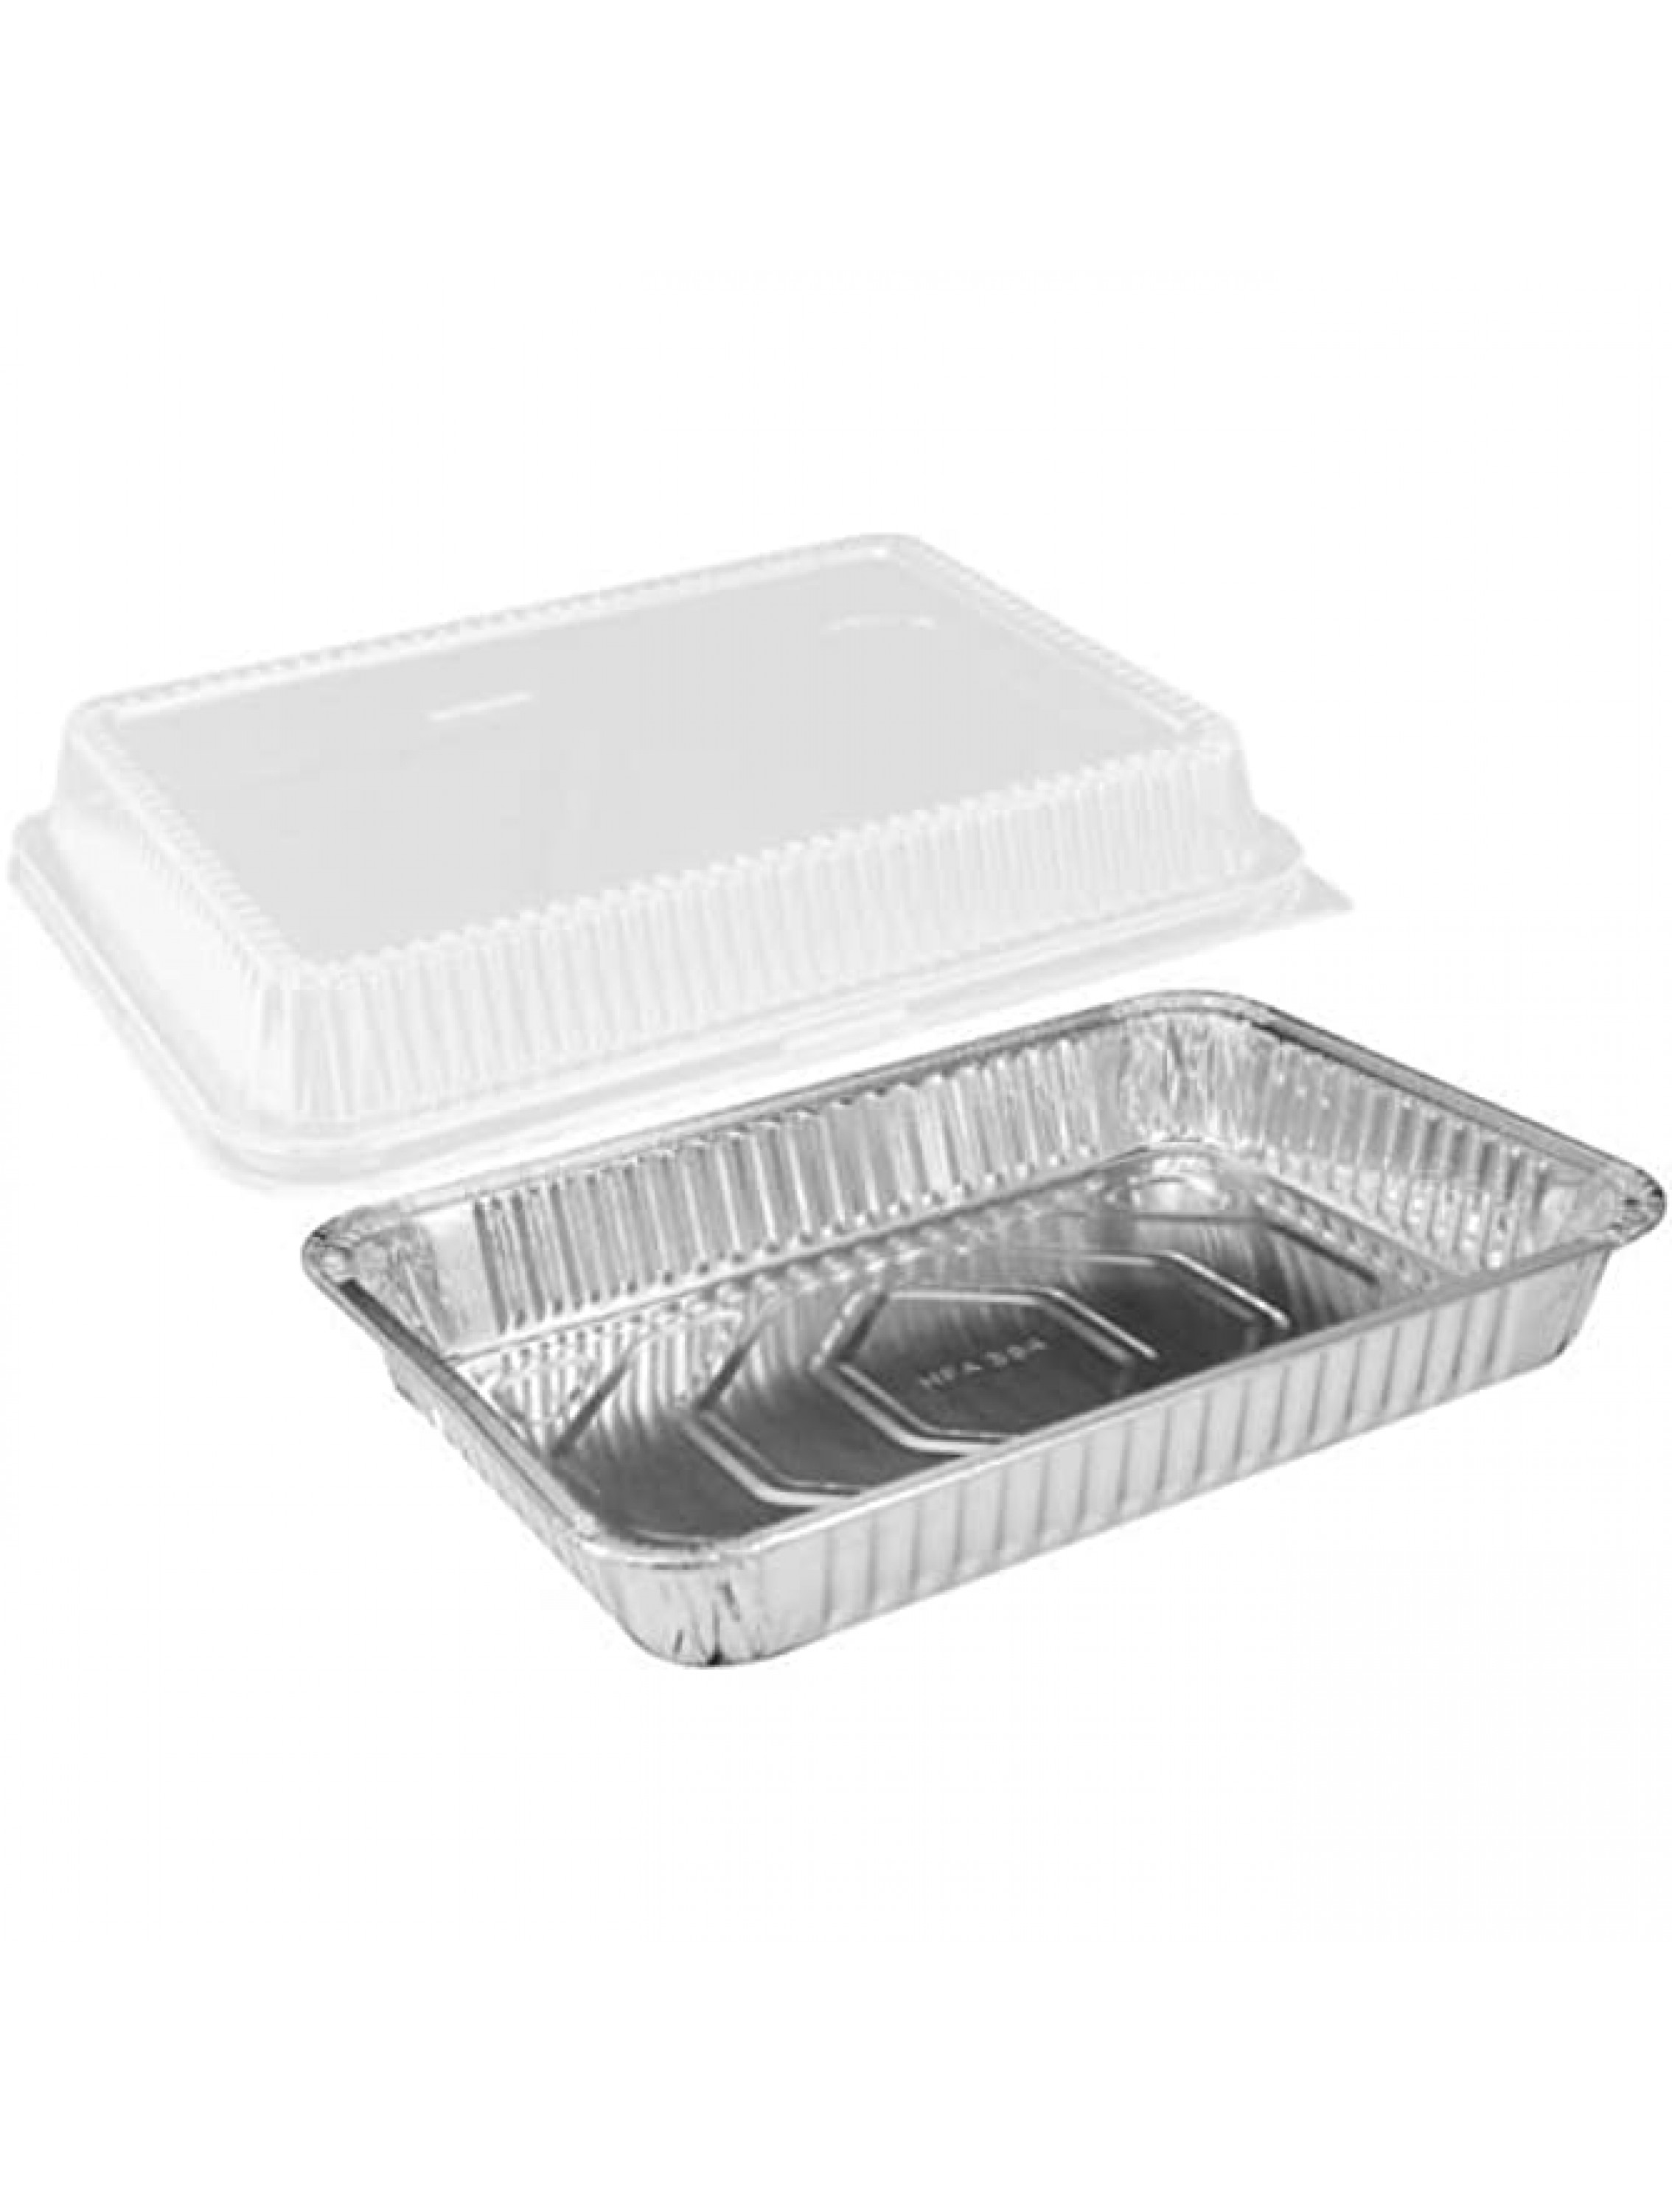 Handi-Foil 13 x 9 Oblong Aluminum Foil Disposable Cake Pan with Clear Dome Lids HFA REF # 394-WDL Pack of 50 Sets - B7BVJU36D